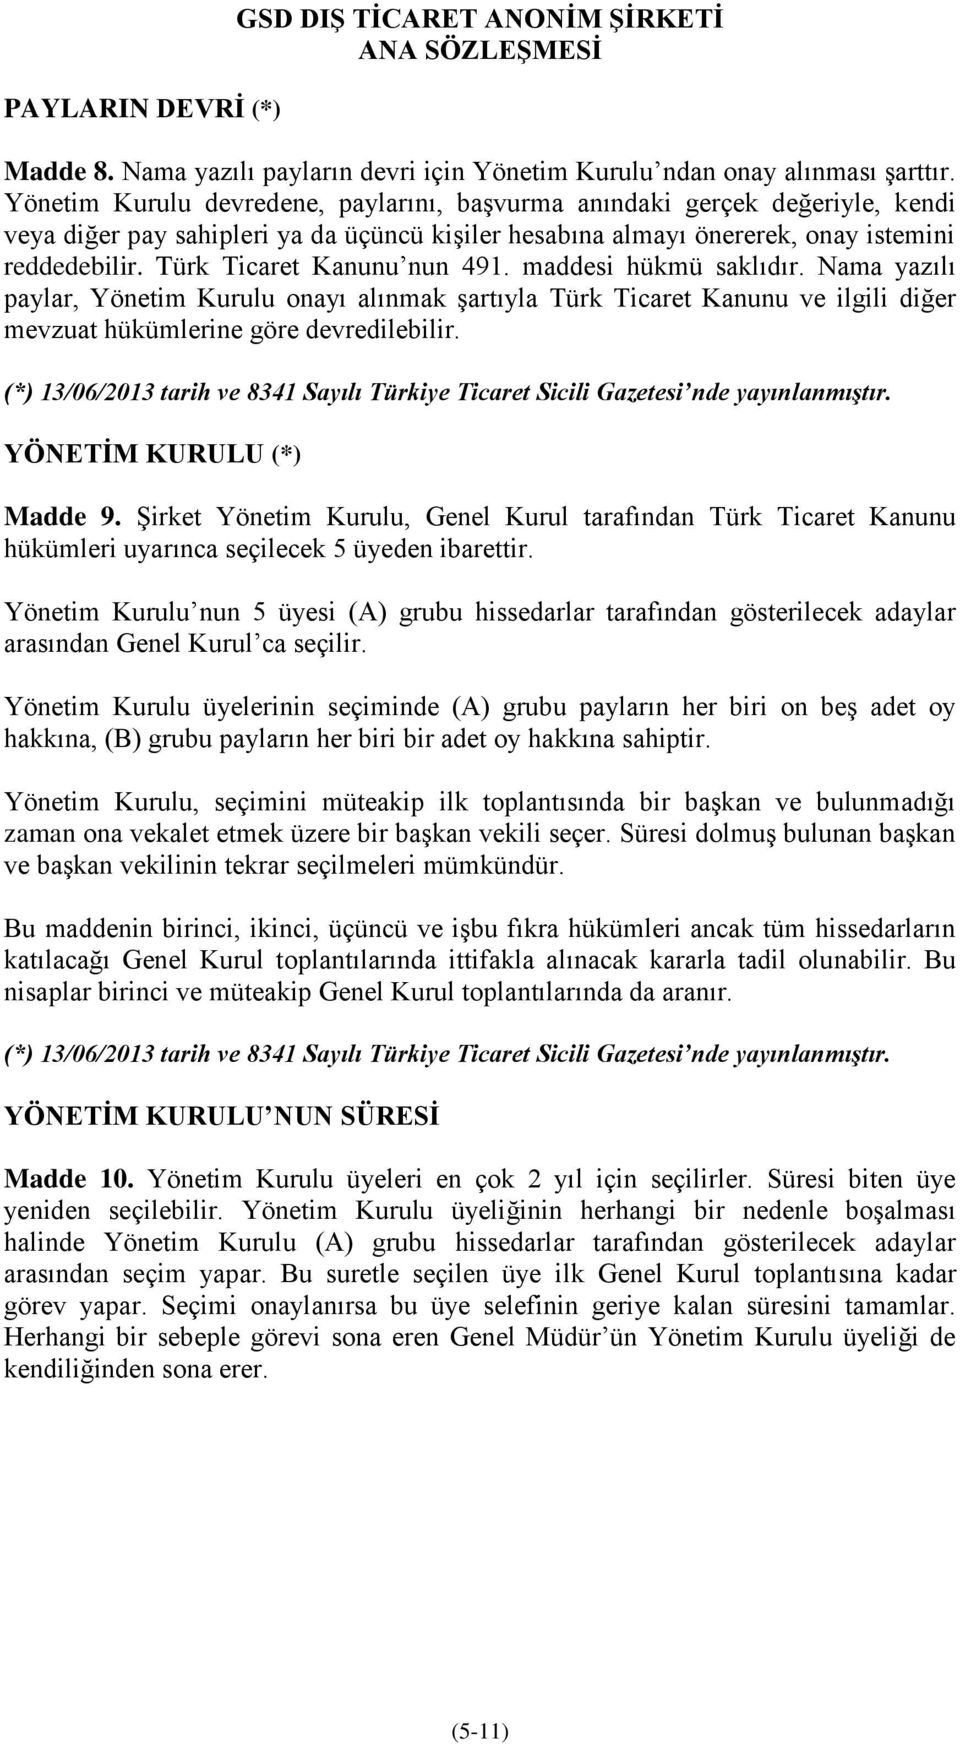 Türk Ticaret Kanunu nun 491. maddesi hükmü saklıdır. Nama yazılı paylar, Yönetim Kurulu onayı alınmak şartıyla Türk Ticaret Kanunu ve ilgili diğer mevzuat hükümlerine göre devredilebilir.